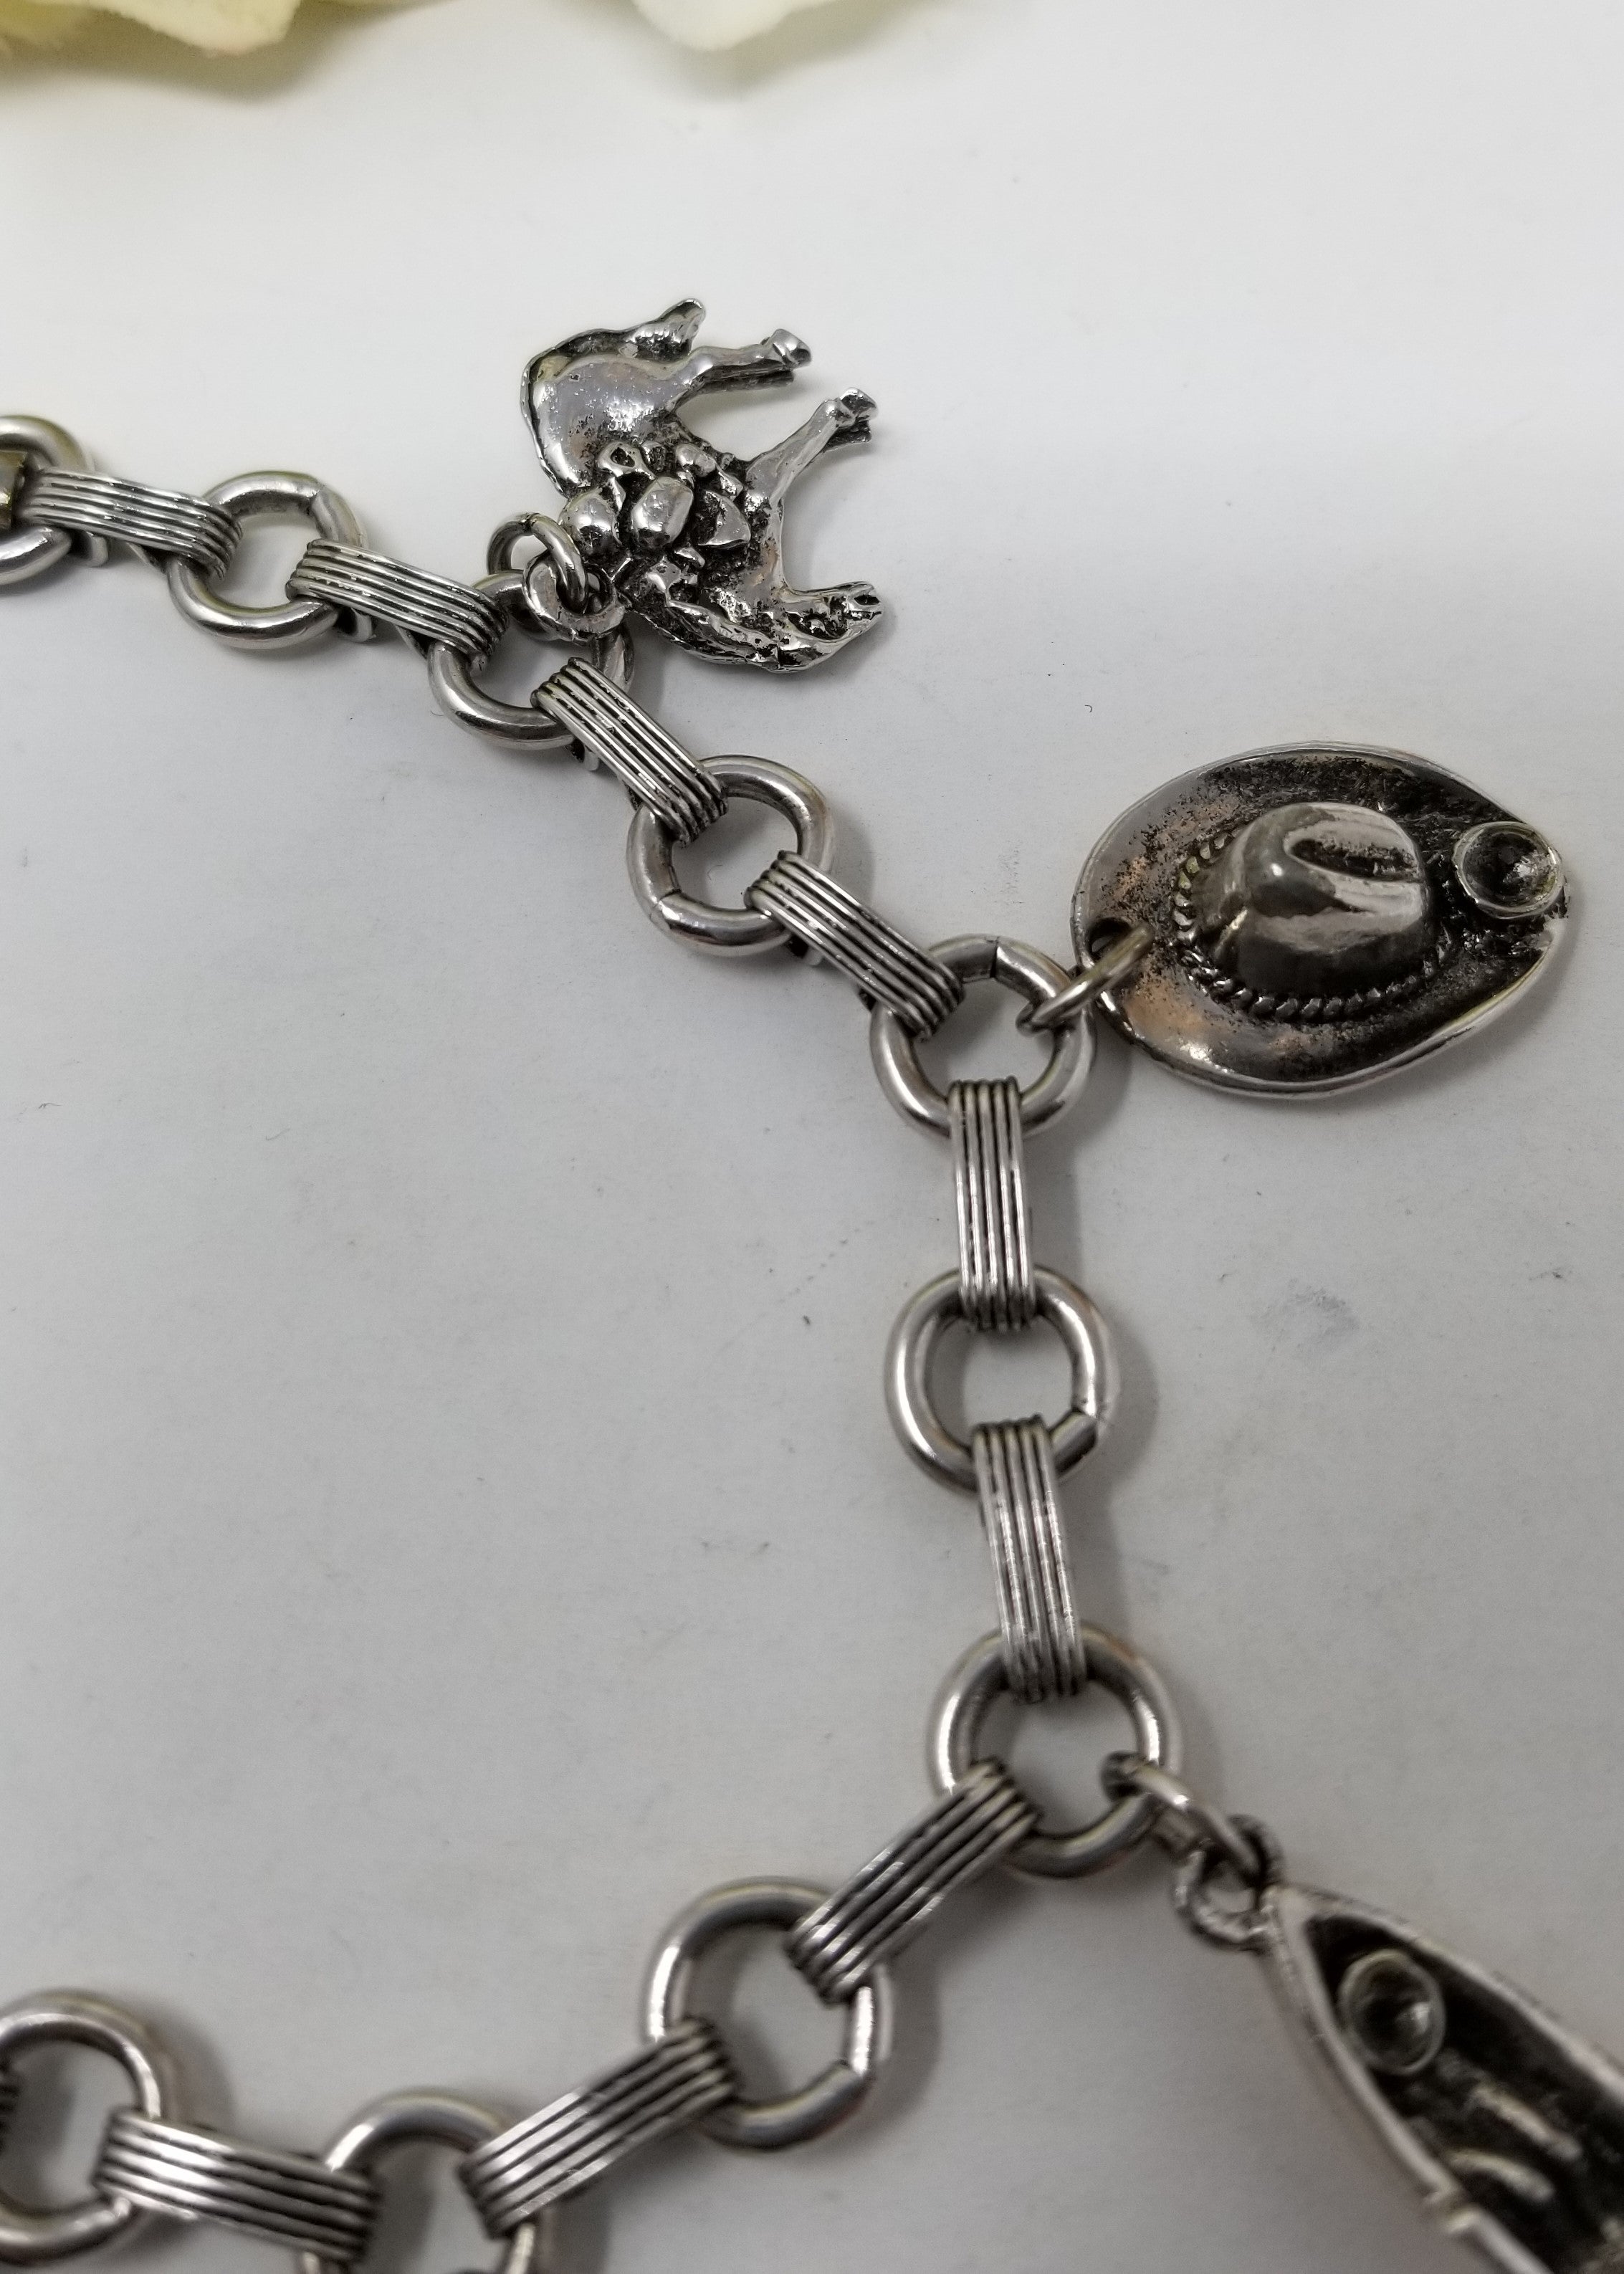 Western Theme Charm Bracelet in Silver